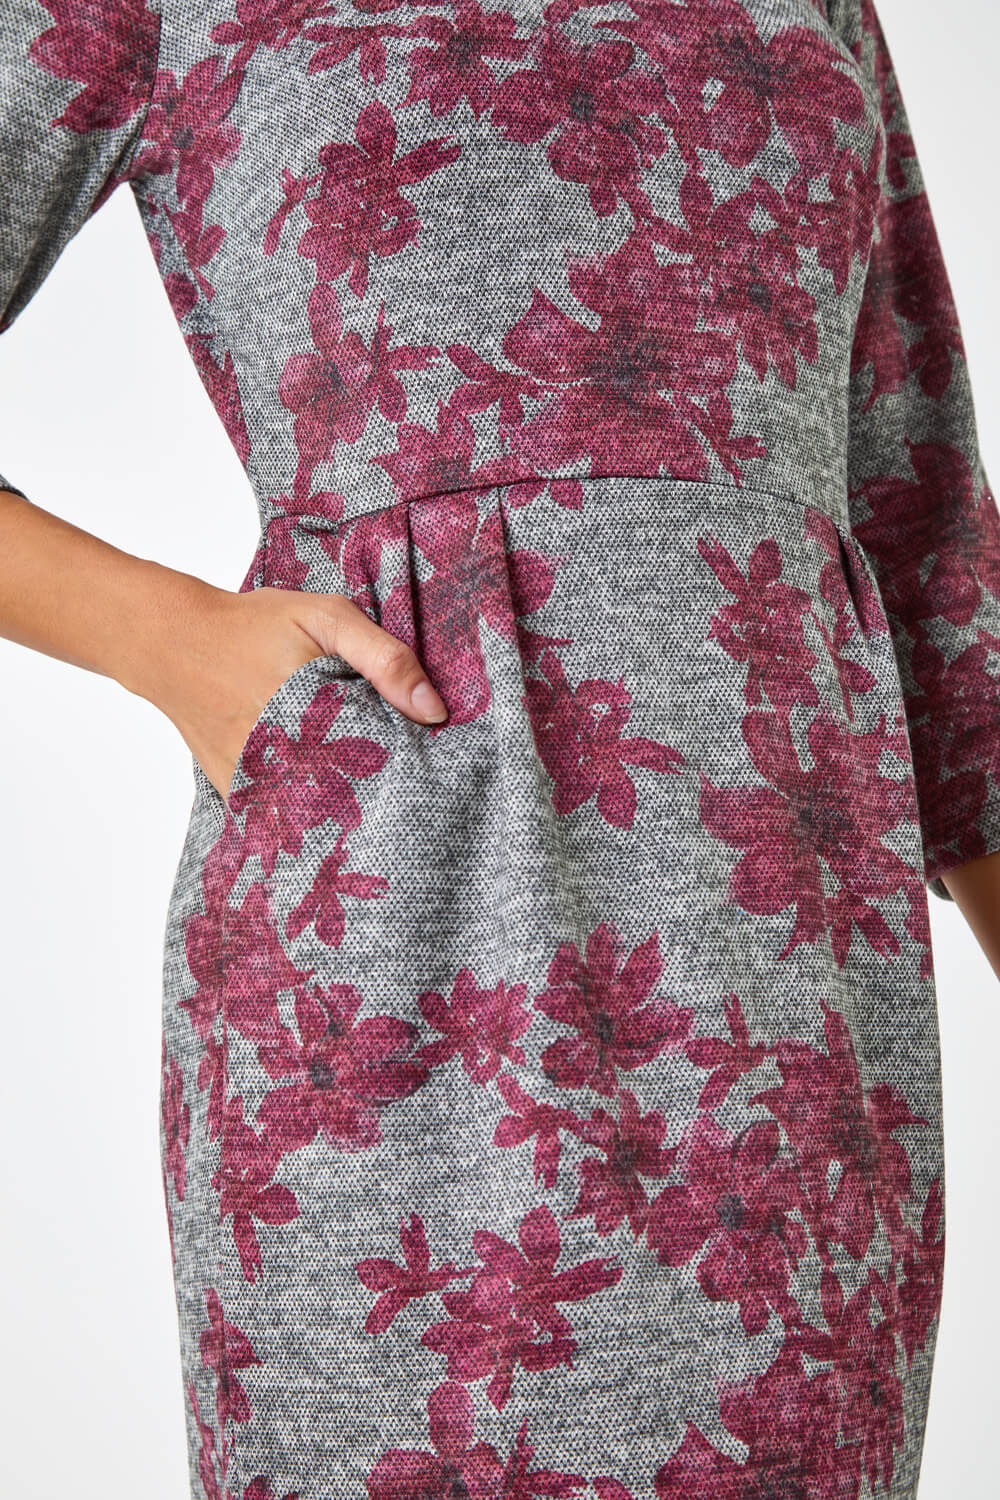 PINK Floral Print Pocket Stretch Dress , Image 5 of 5